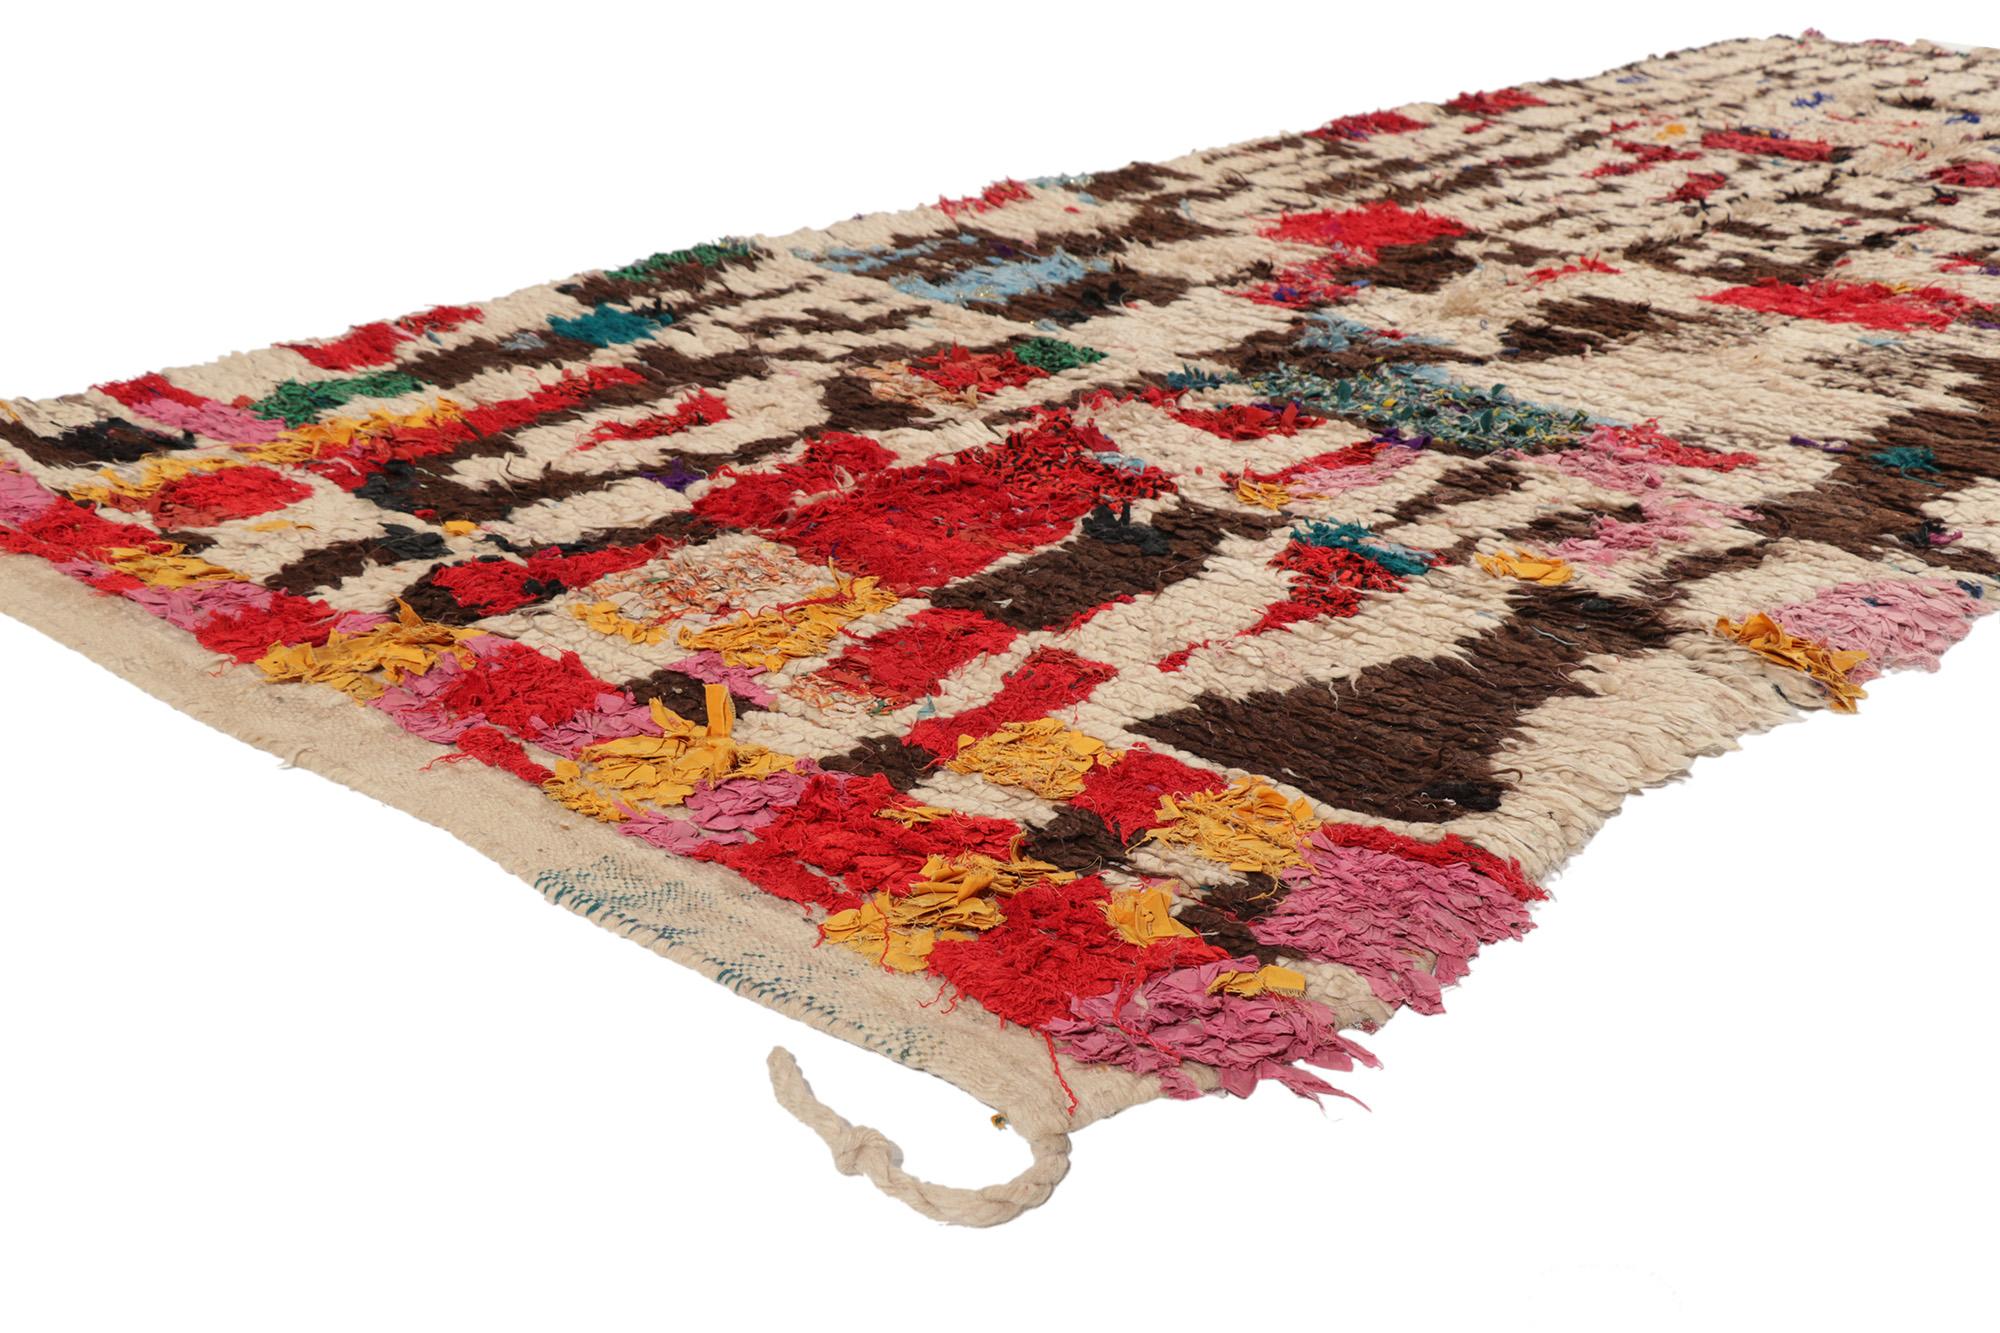 20095 Tapis marocain Vintage Talsint, 04'06 x 11'04. Les tapis de Talsint, également connus sous le nom de tapis de Talsint Boucherouite, sont originaires de la région de Talsint, dans le sud-est du Maroc. Fabriqués par des artisans berbères, ces